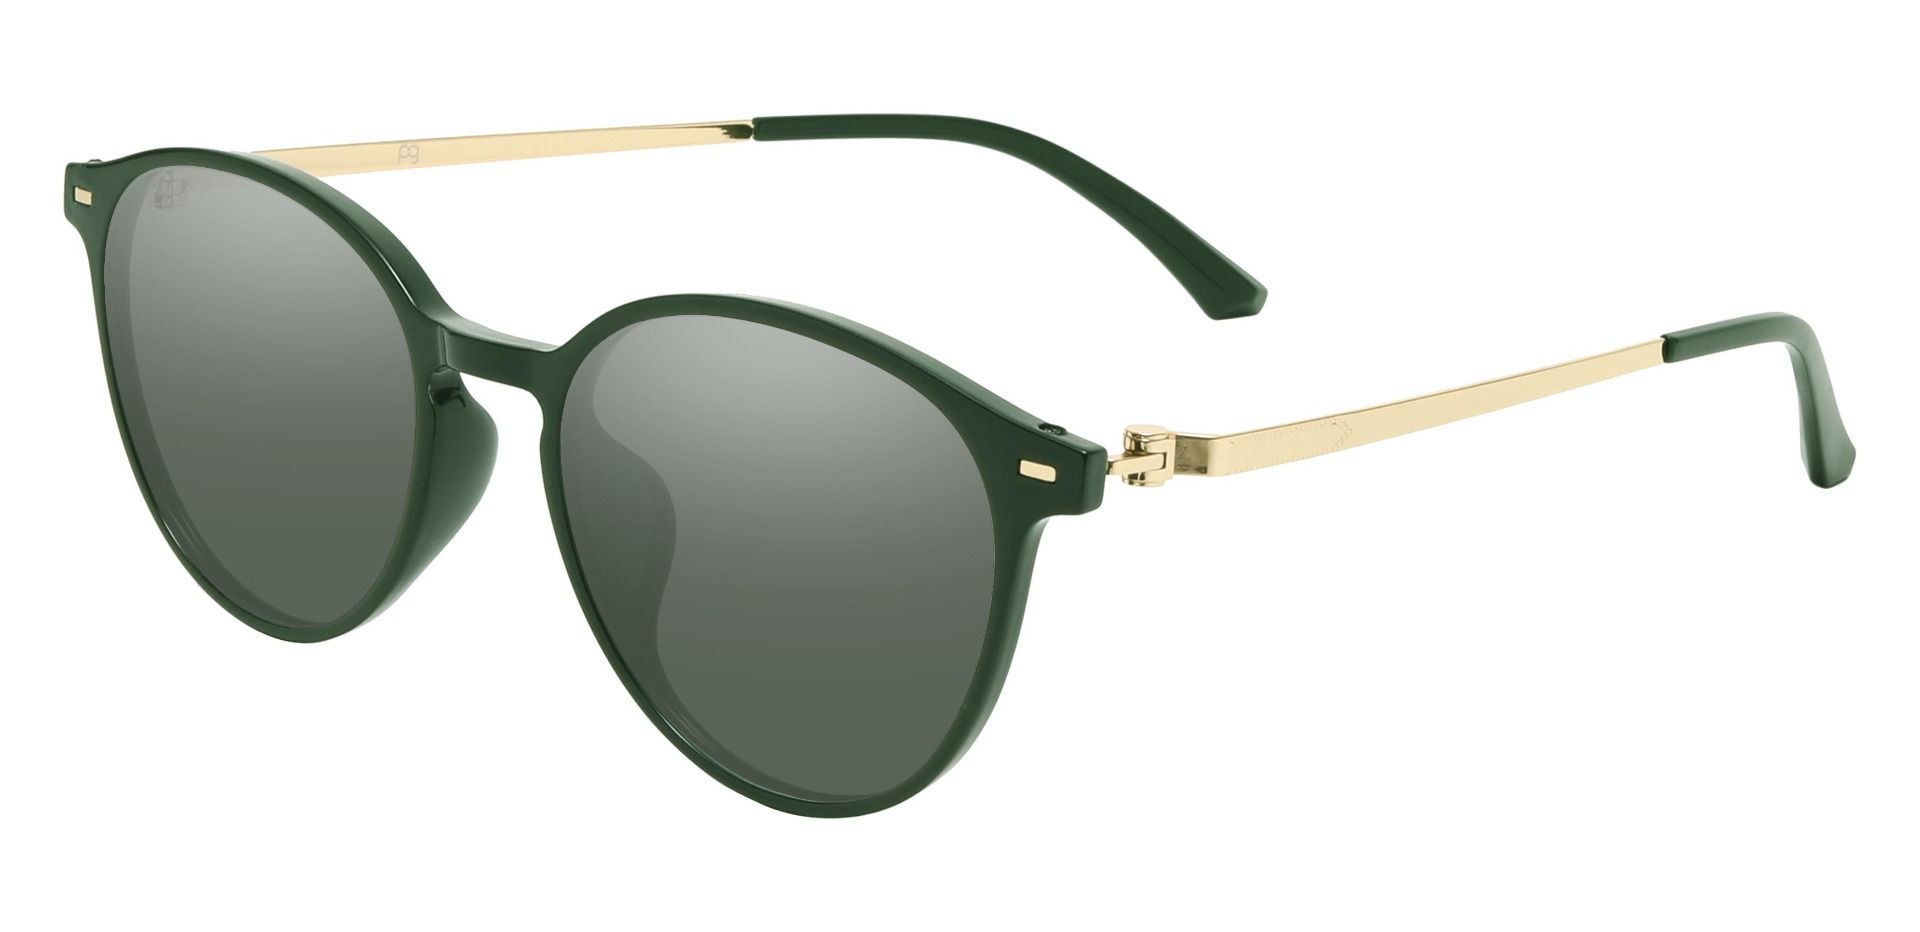 Springer Round Progressive Sunglasses - Green Frame With Green Lenses